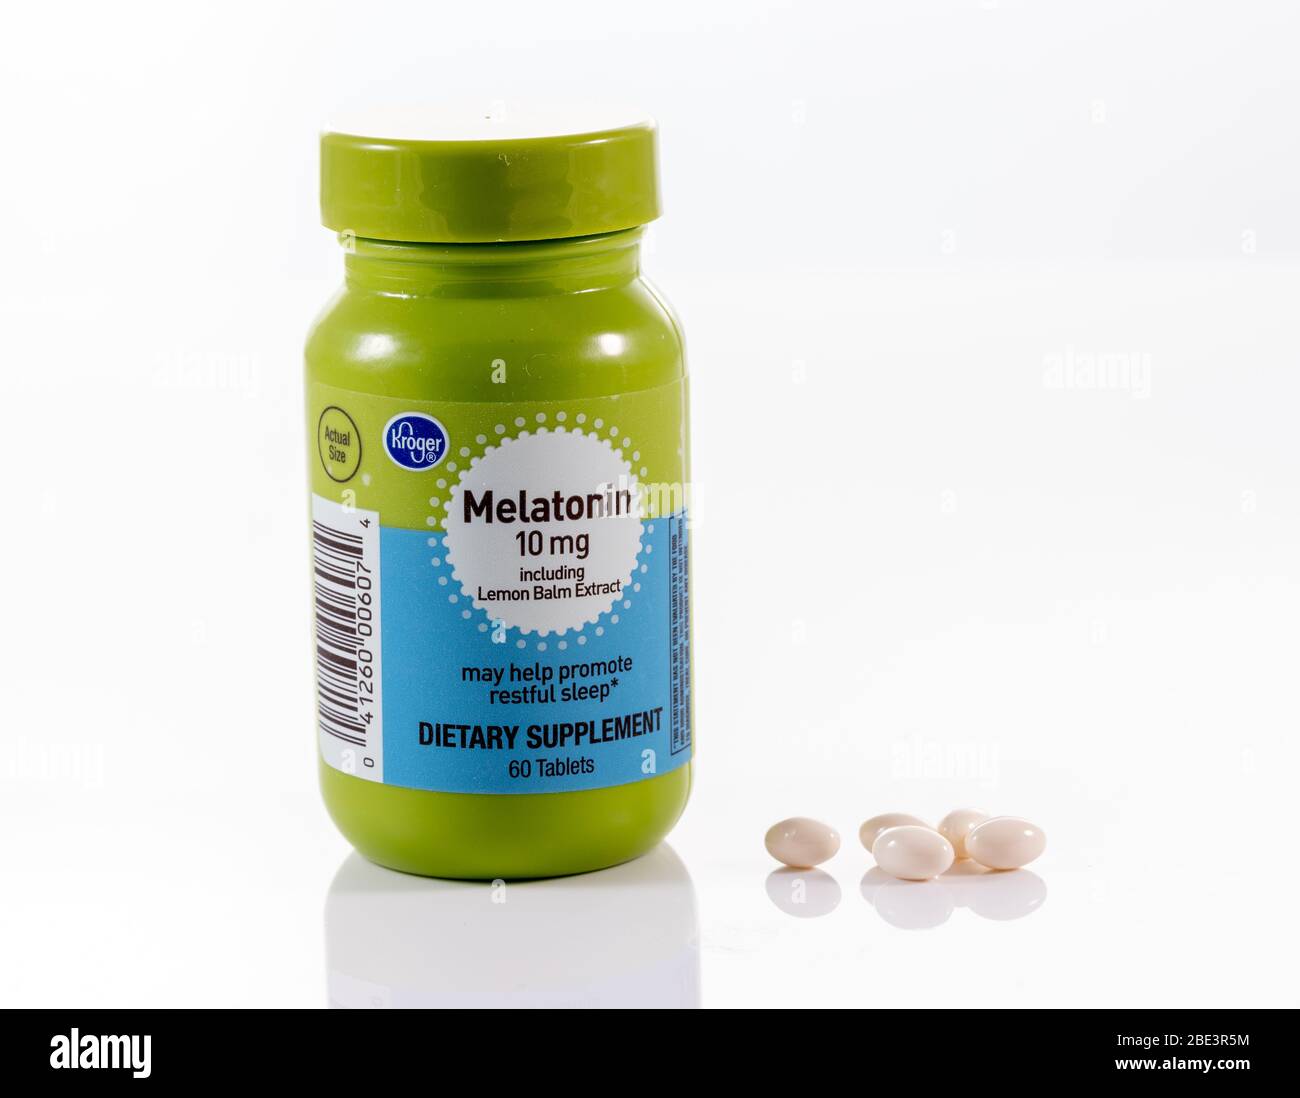 Morgantown, WV - 11 April 2020: Kroger store brand Melatonin capsules and tablet bottle white background Stock Photo